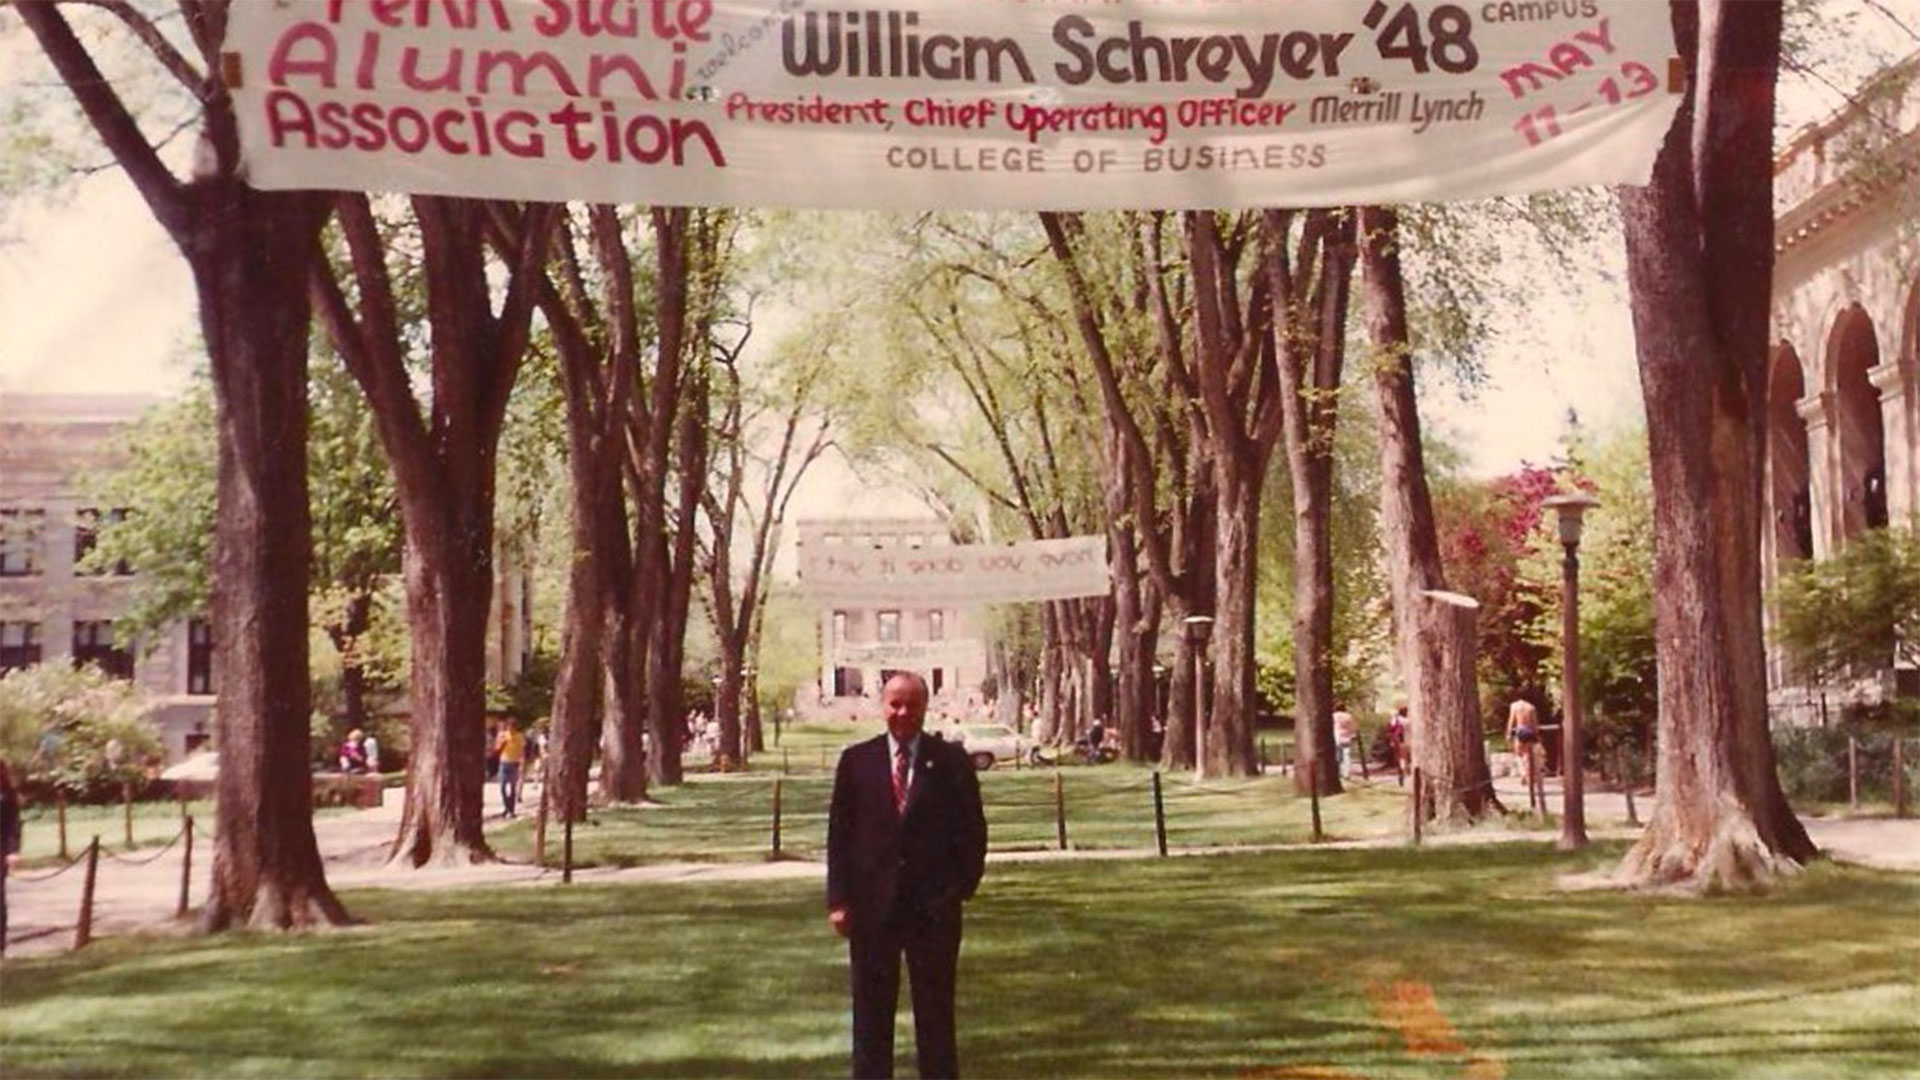 William Schreyer posing under a banner on campus